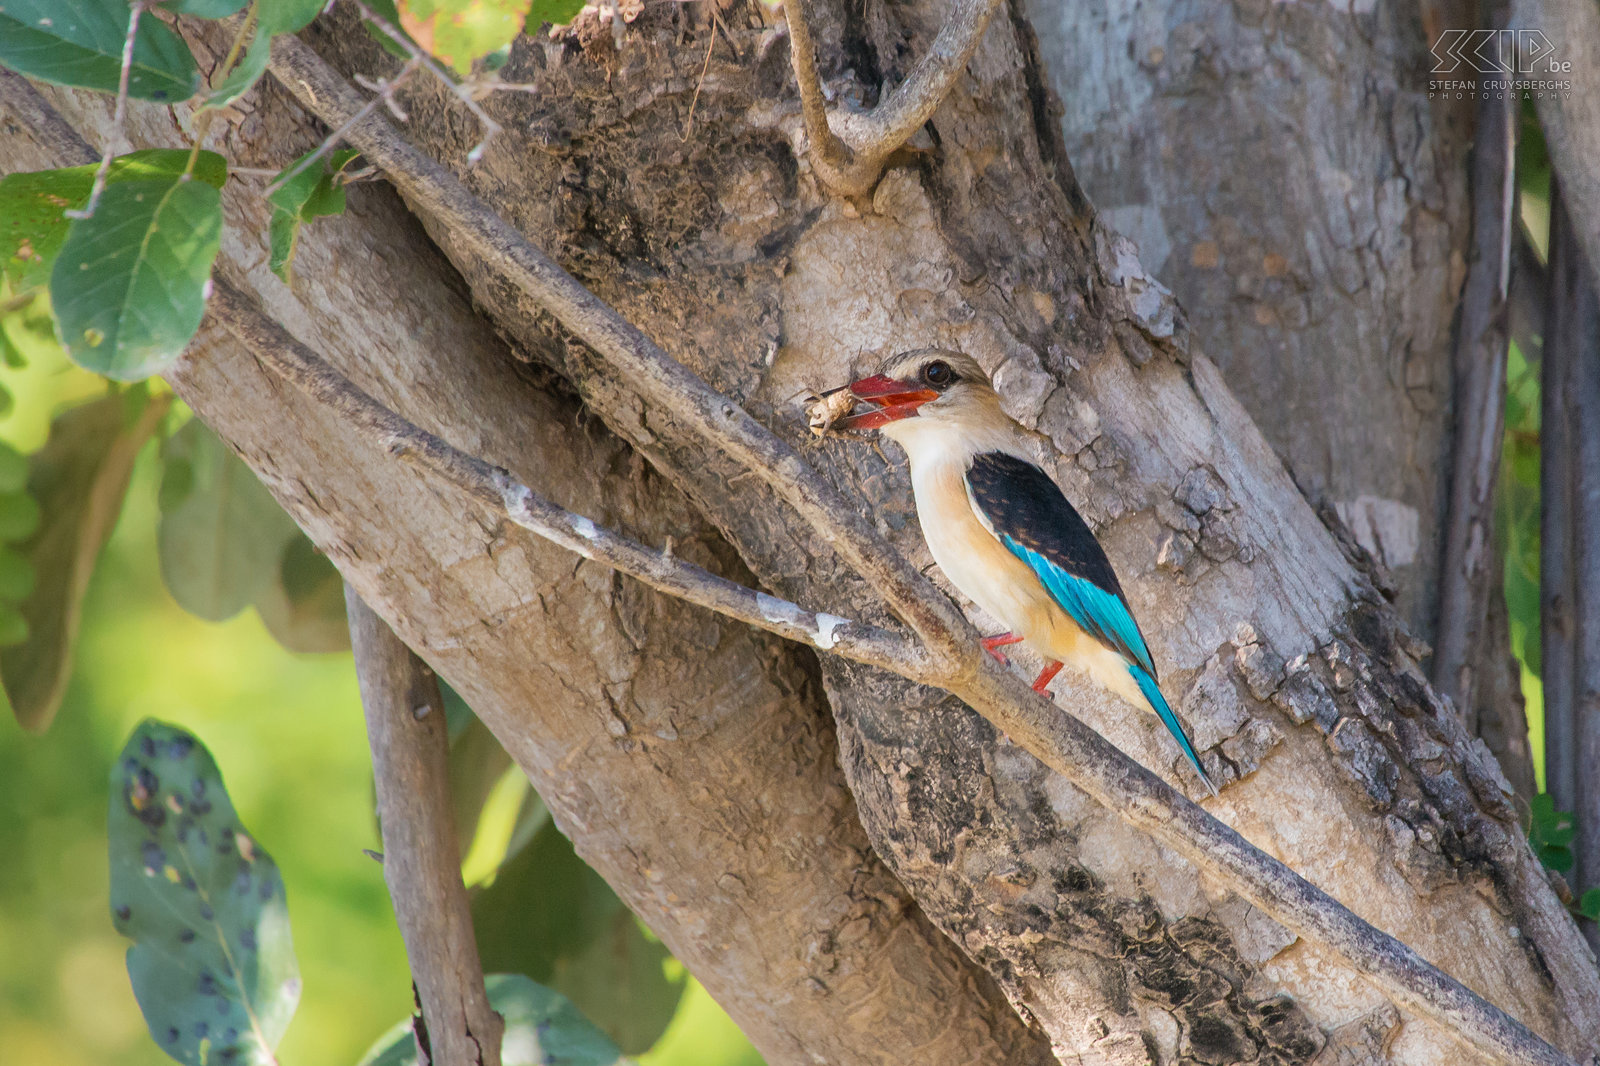 Lower Zambezi - Bruinkapijsvogel Deze bruinkapijsvogel (Brown-hooded kingfisher , Halcyon albiventris) heeft een sprinkhaan gevangen en peuzelt deze op terwijl we langs hem door peddelen. Stefan Cruysberghs